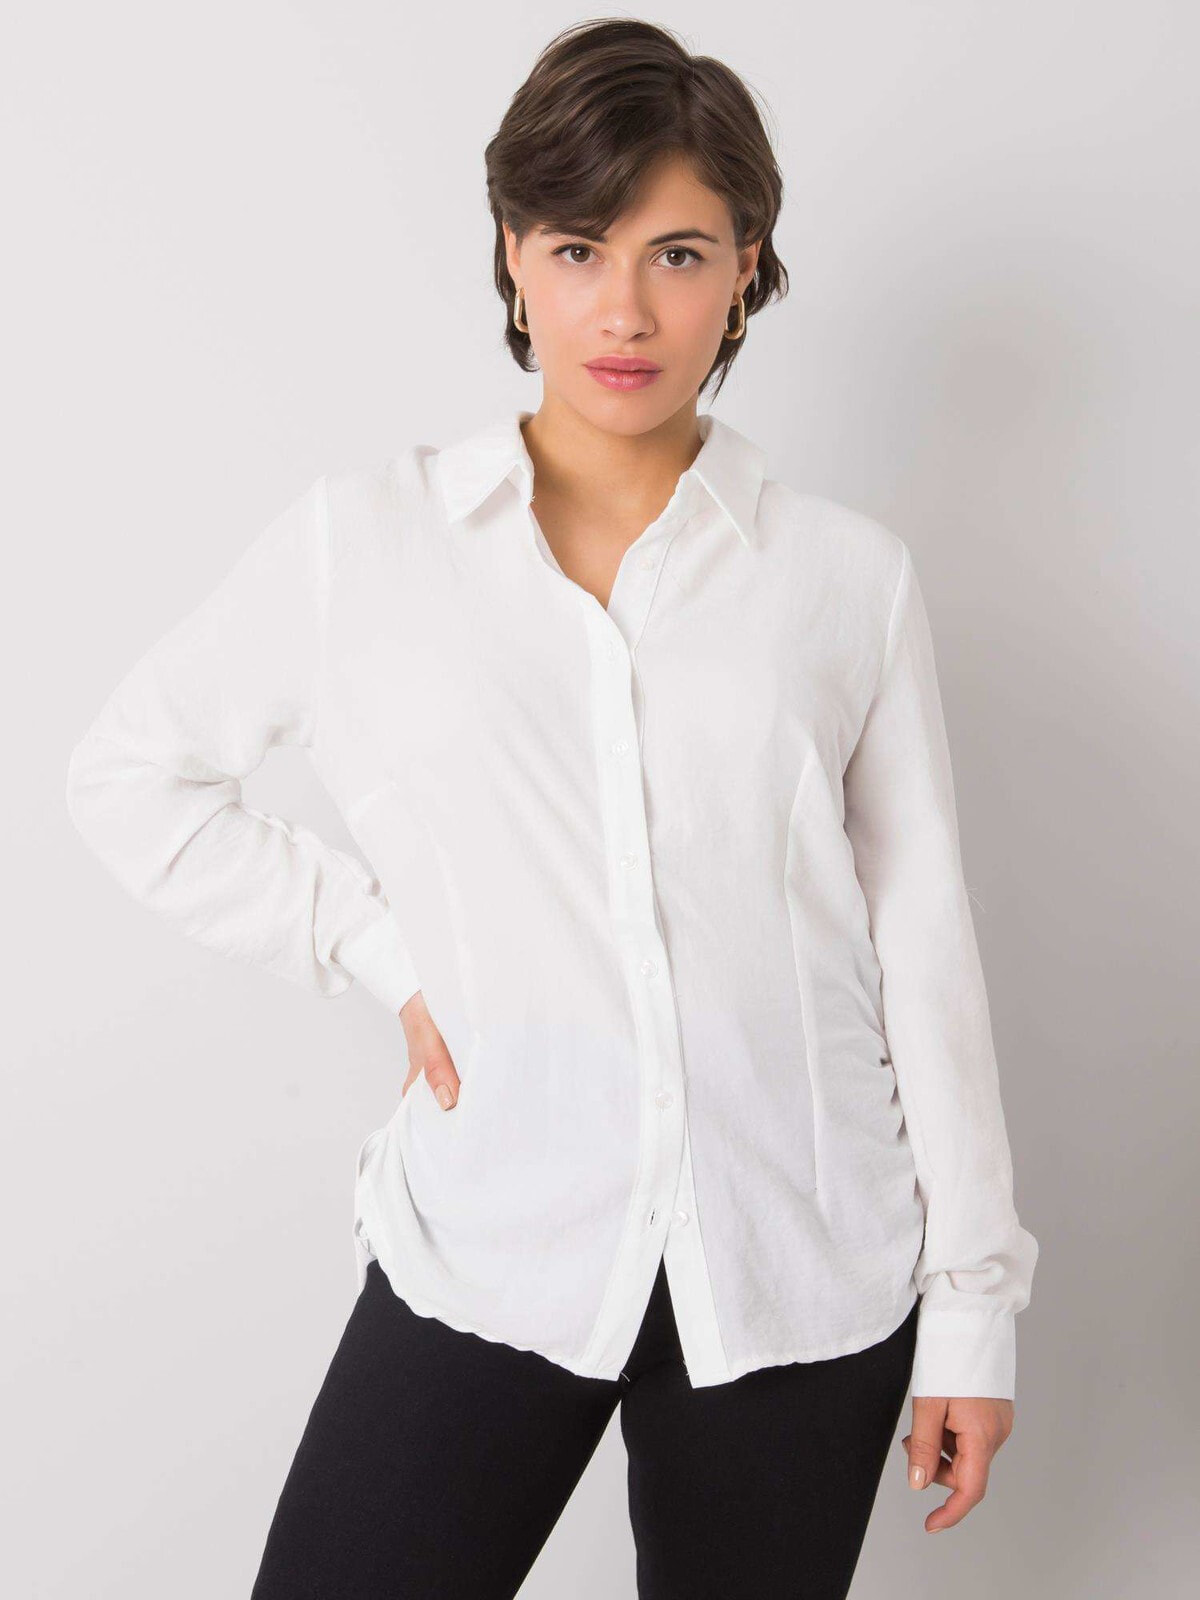 Женская рубашка приталенного кроя с длинным рукавом белая Factory Price